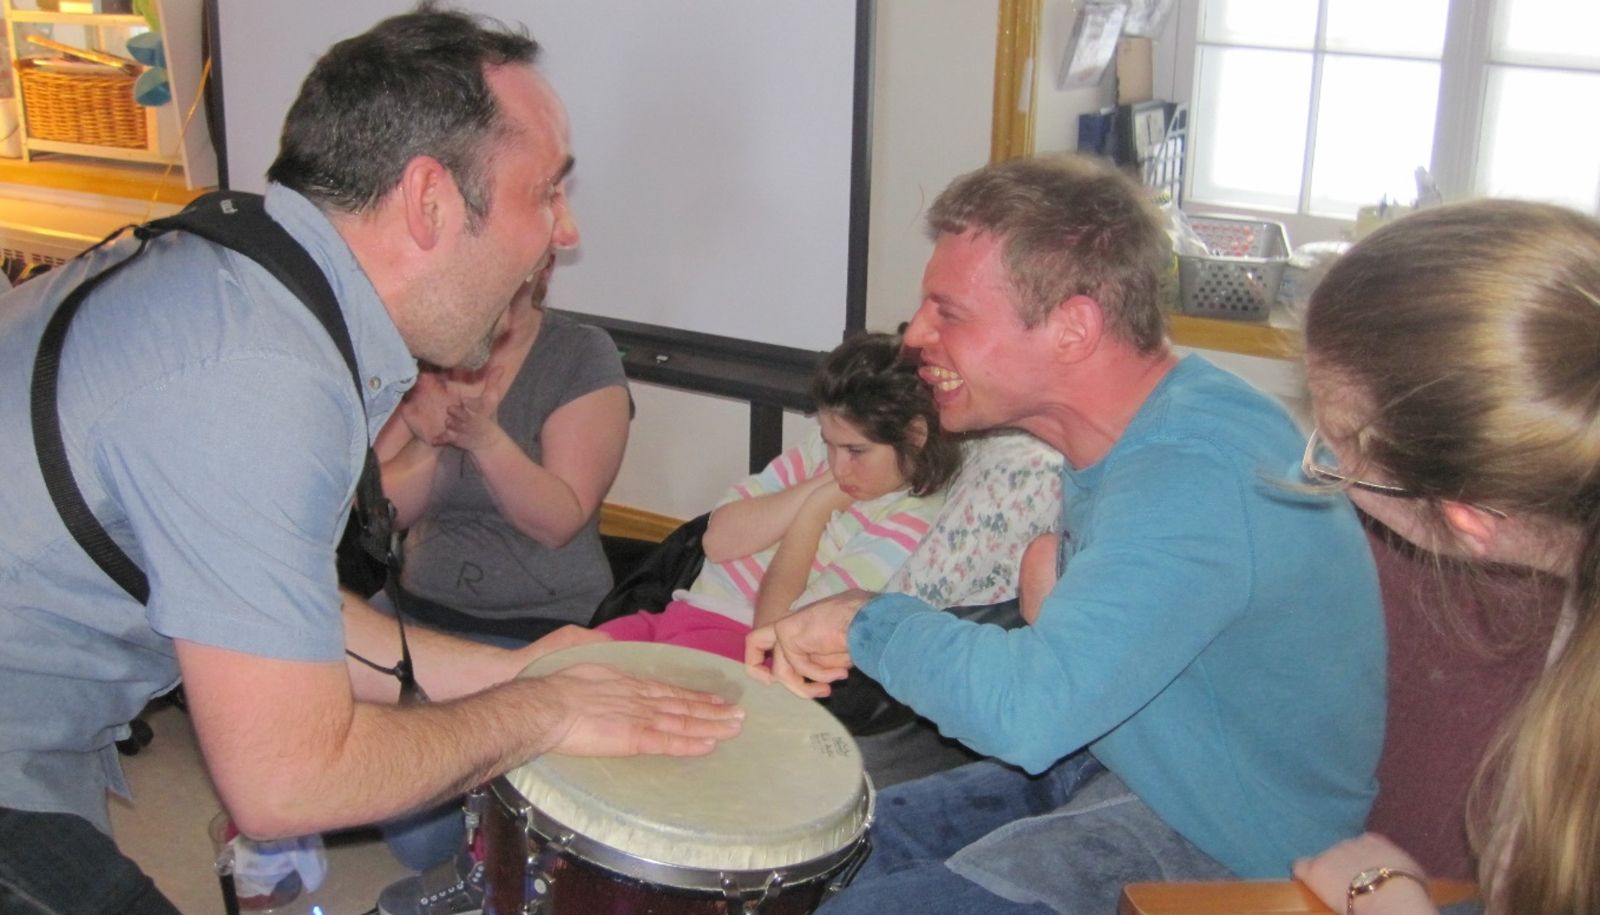 Francis fait de la musique dans un centre d’activités de jour, accompagné d’un bénévole.